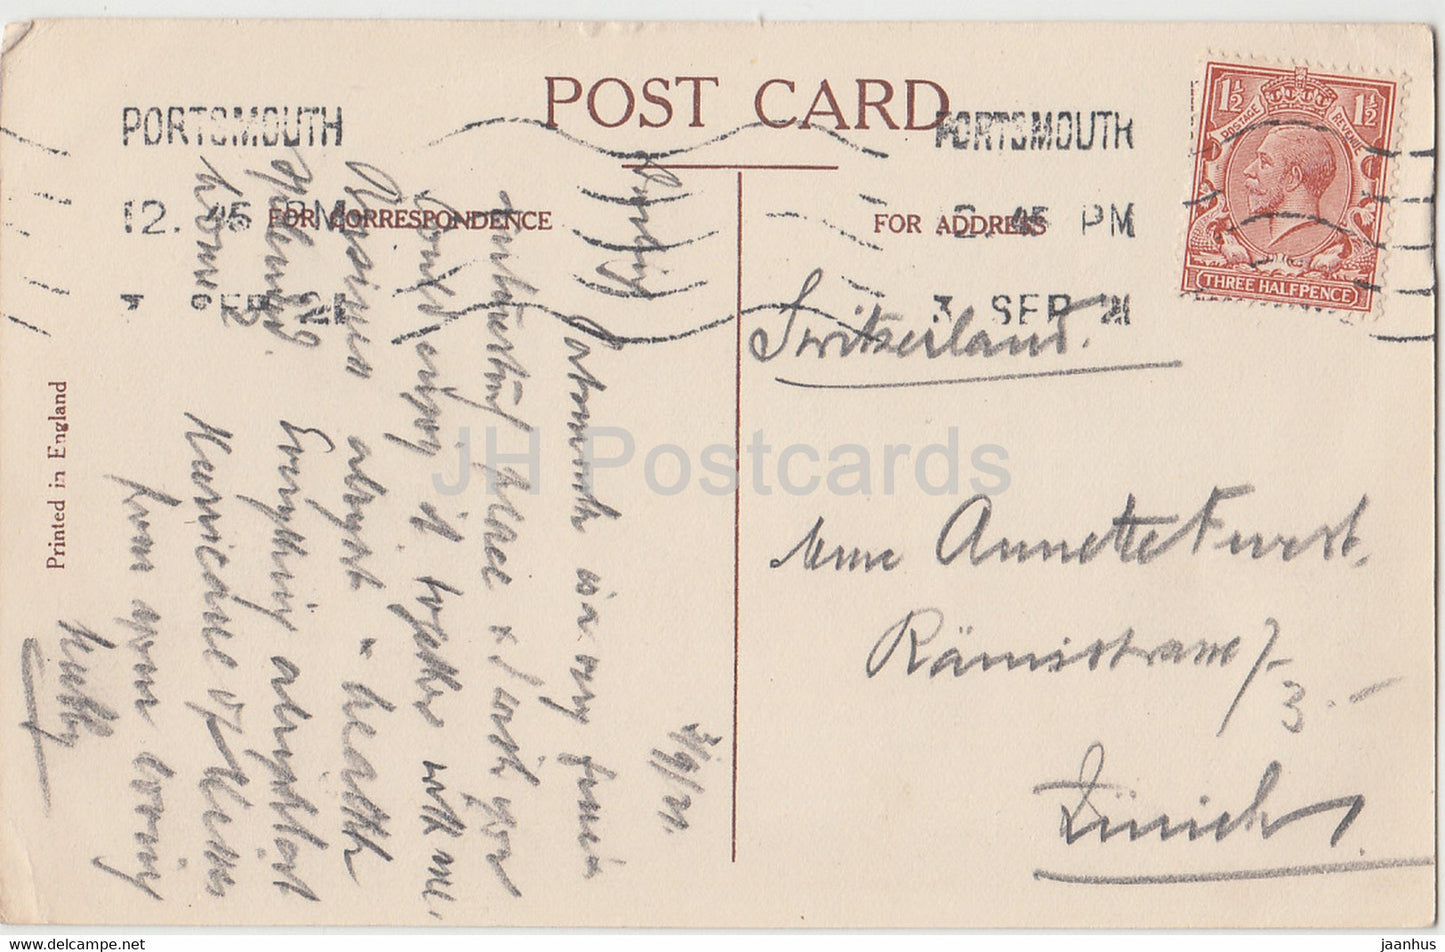 Southsea Common - tram - old postcard - 1921 - England - United Kingdom - used